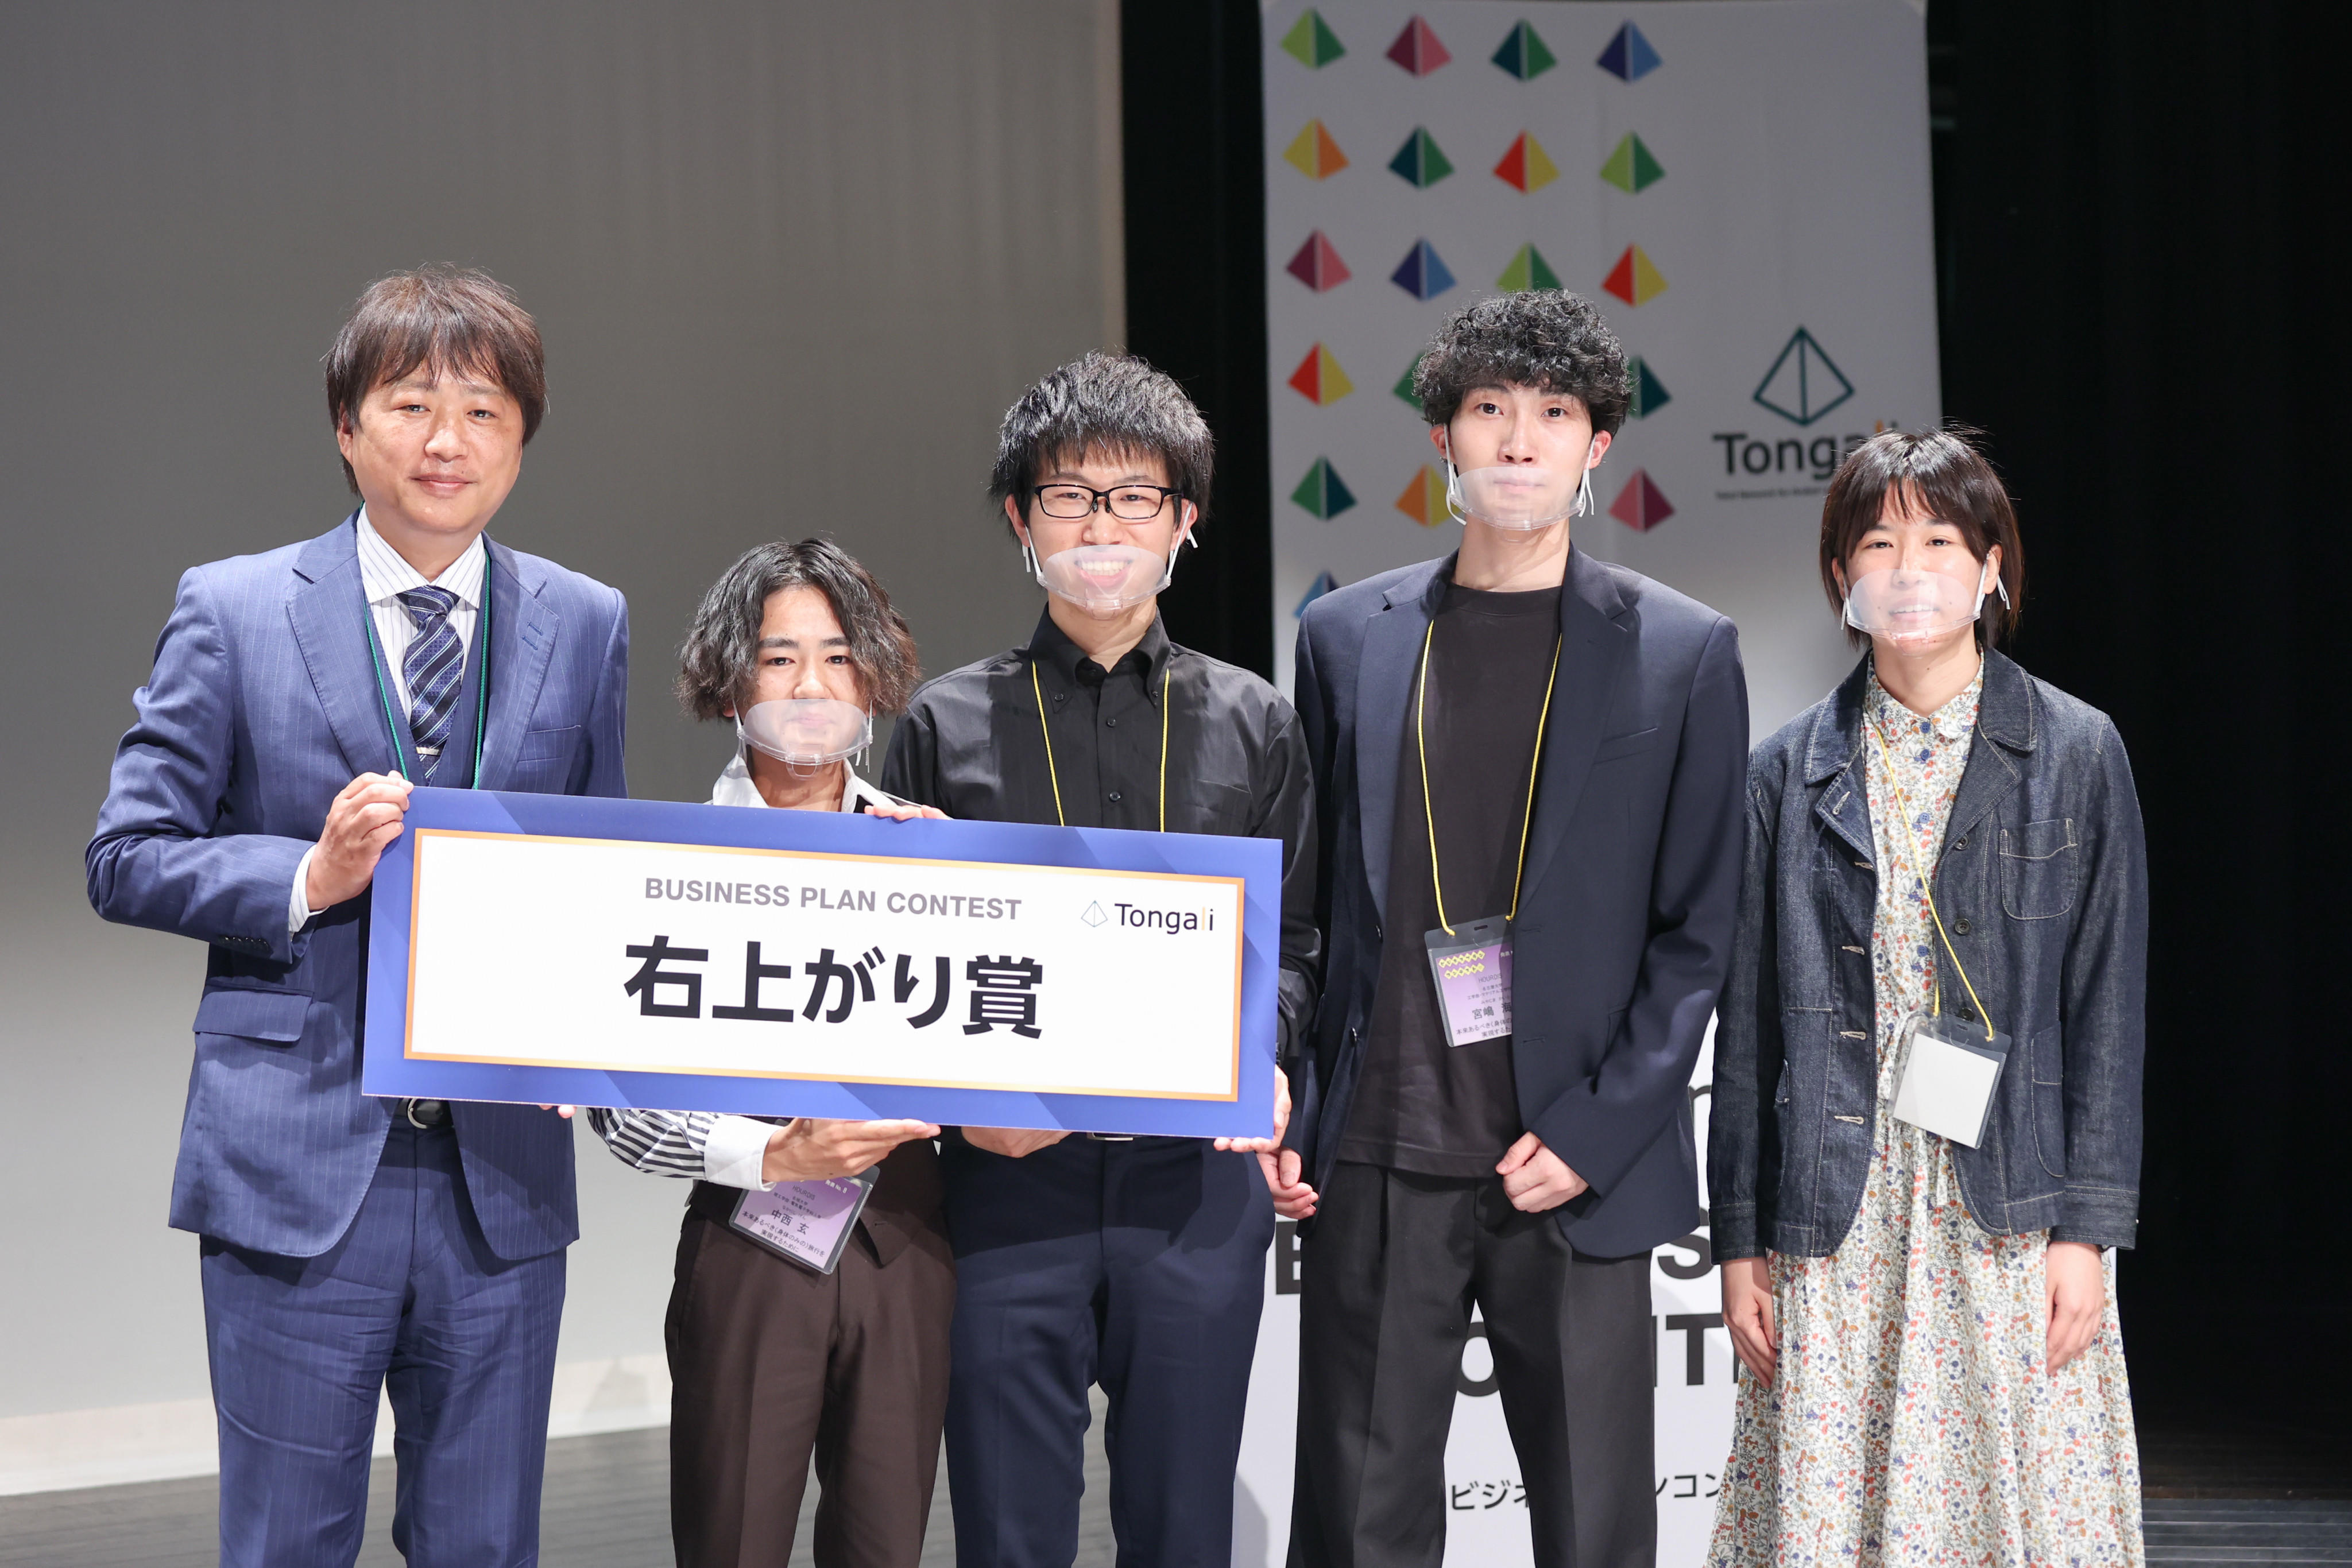 左から西岡昭彦様（ライトアップコンサルティング株式会社）、中西さん、神谷さん、宮嶋さん、鈴木さん　